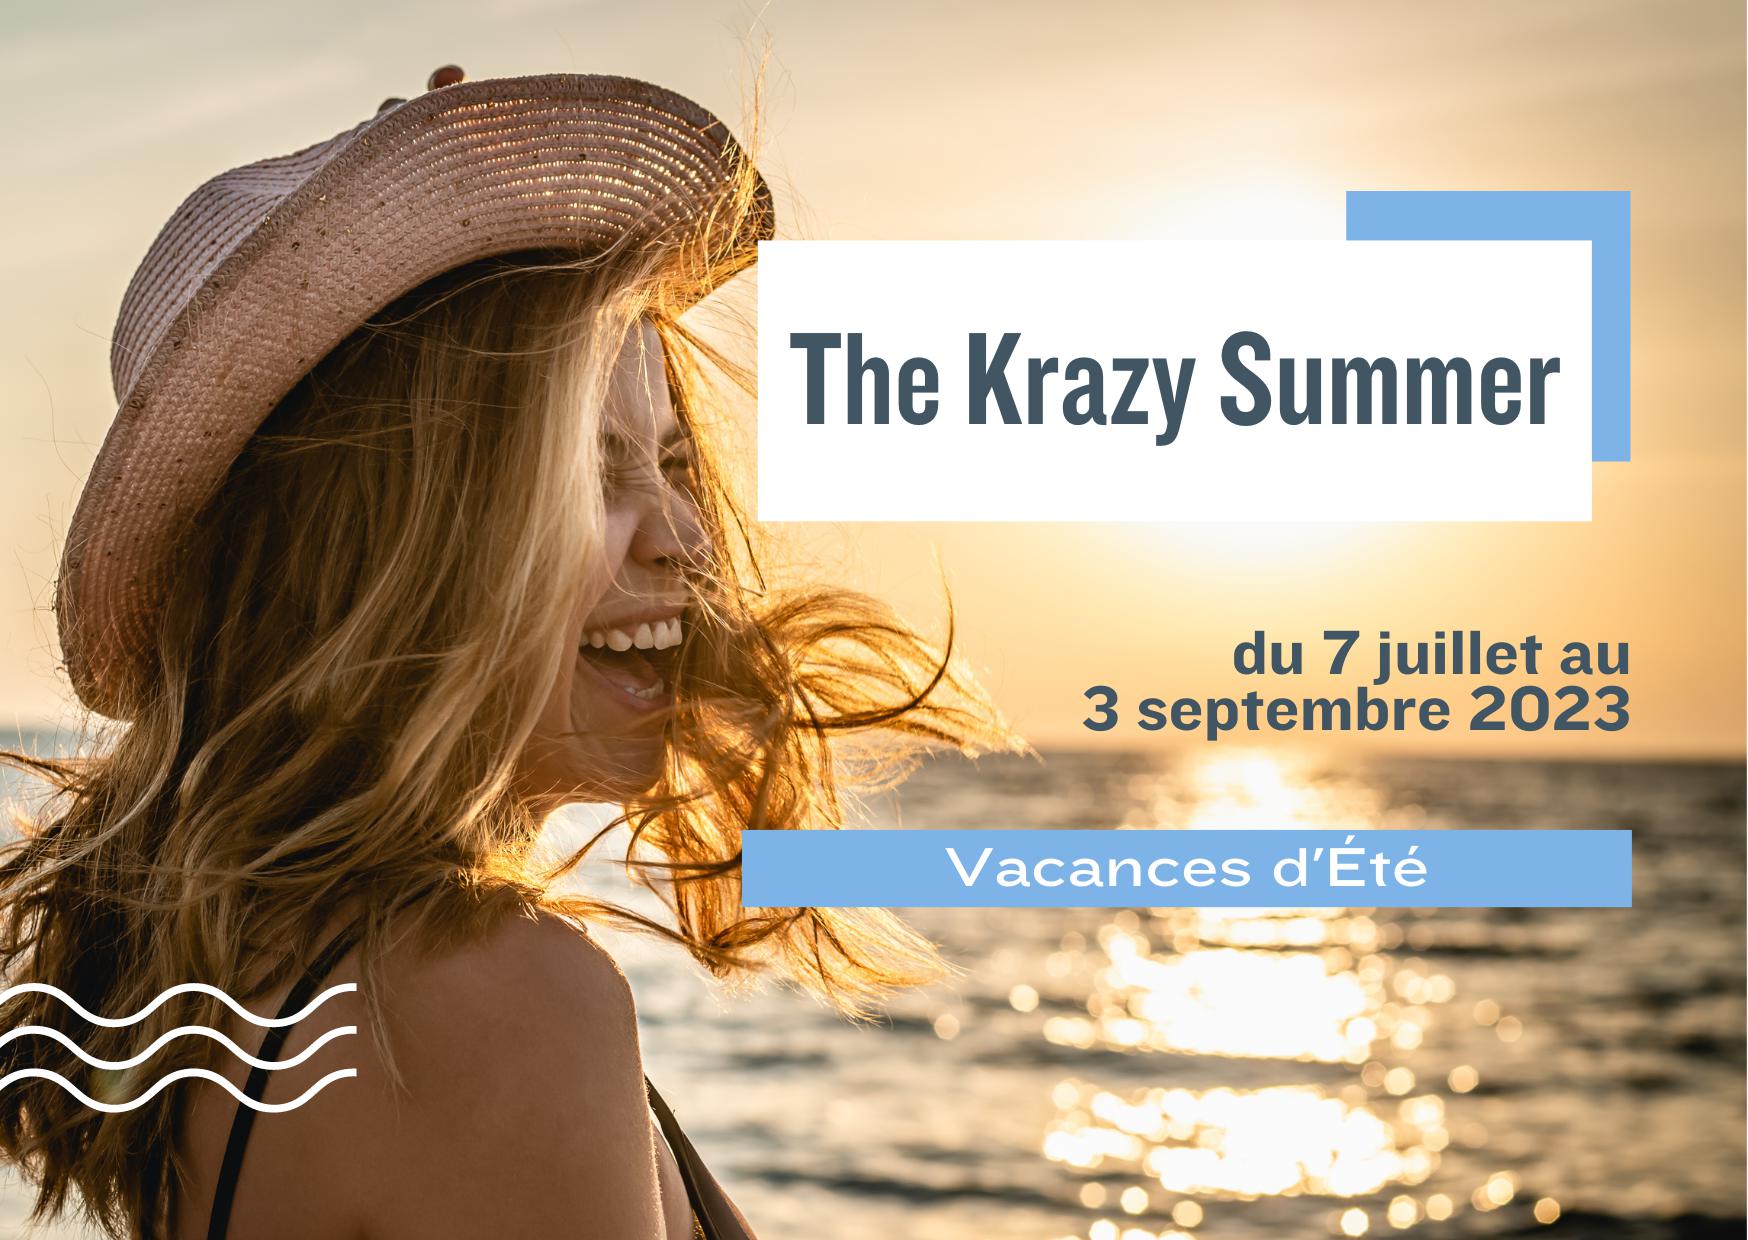 The Krazy Summer offer: Summer vacations in Morbihan